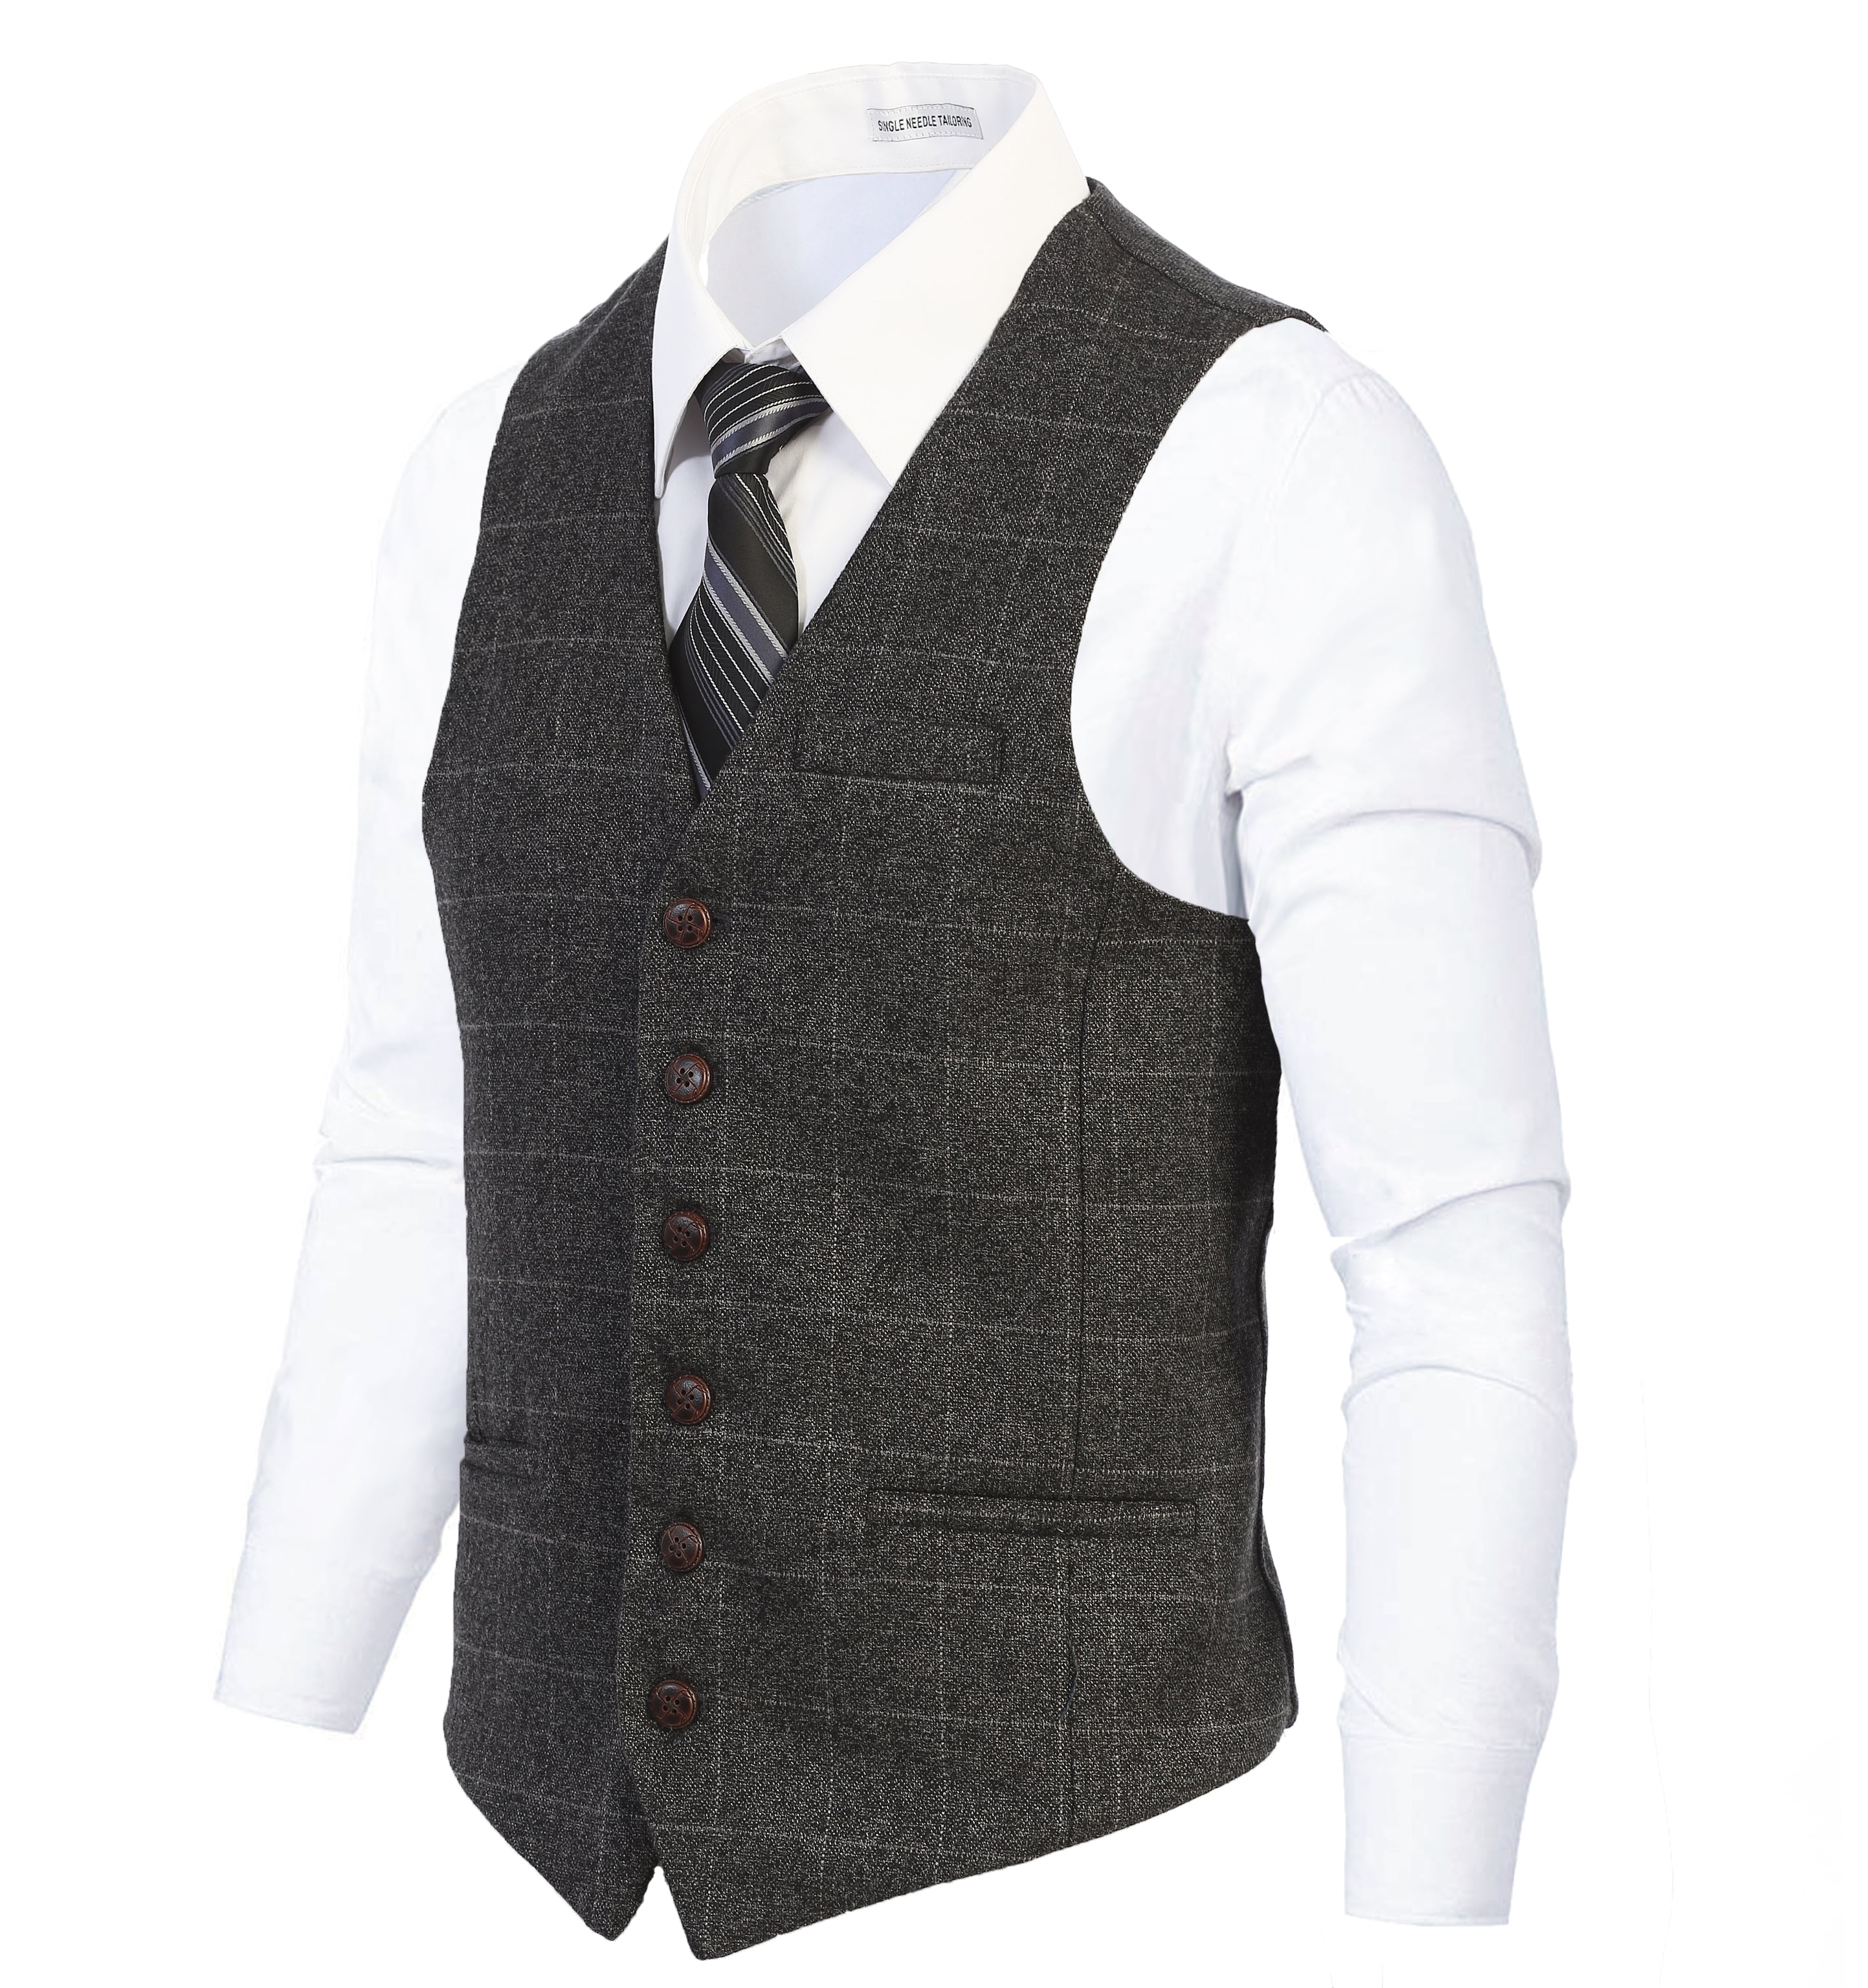 Mens Formal Tweed Lapel Vest Jacket Herringbone Waistcoat Casual Sleeveless Tops